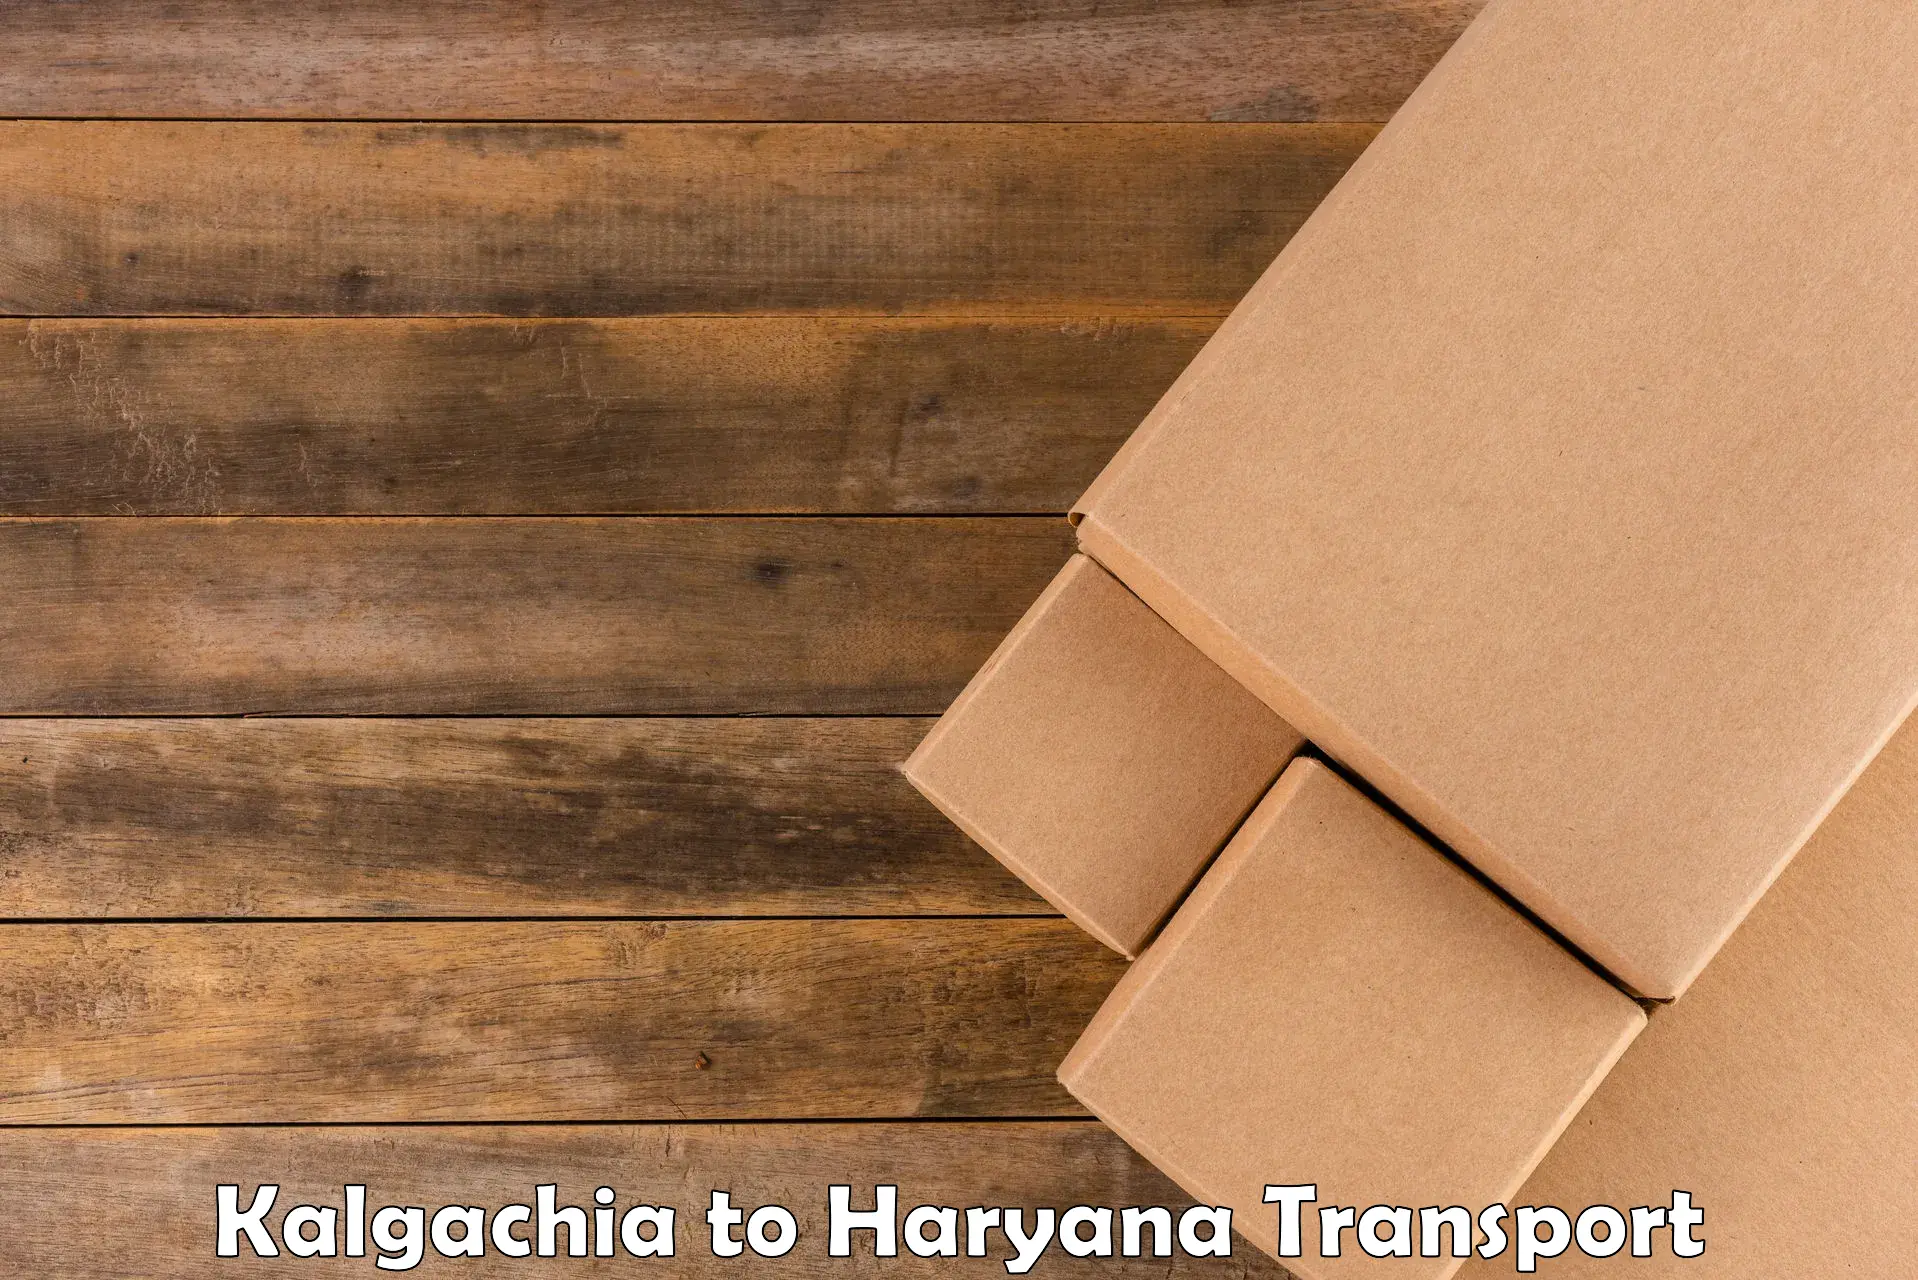 Parcel transport services Kalgachia to Sohna